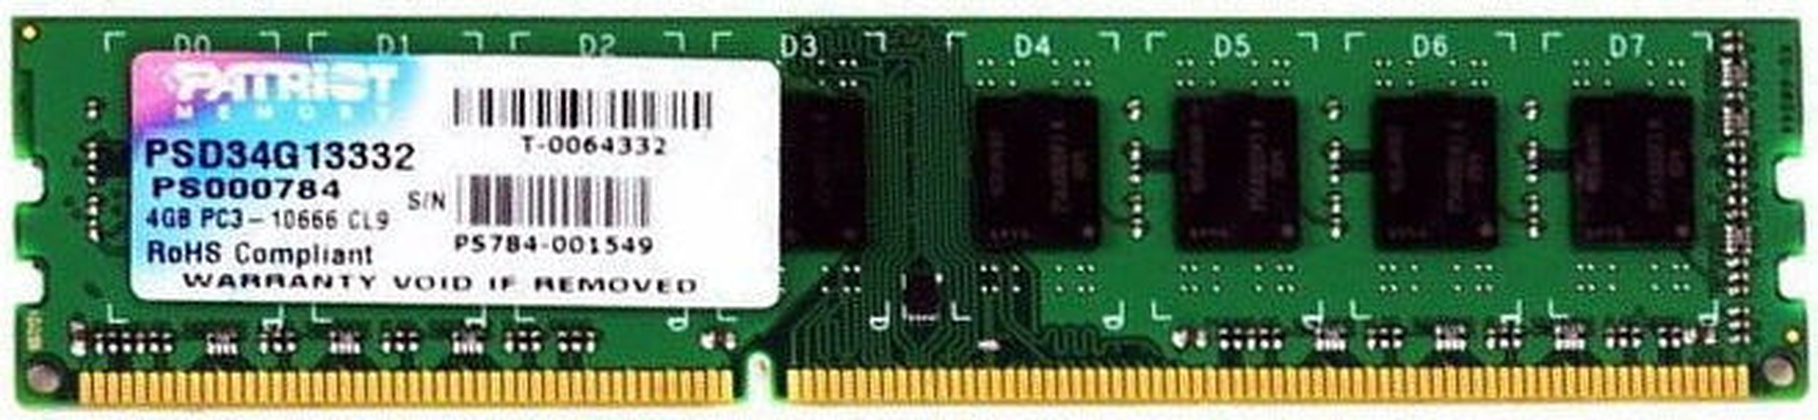 ОЗУ Patriot PSD34G133381 DDR3 4 Гб (1x4 Гб)